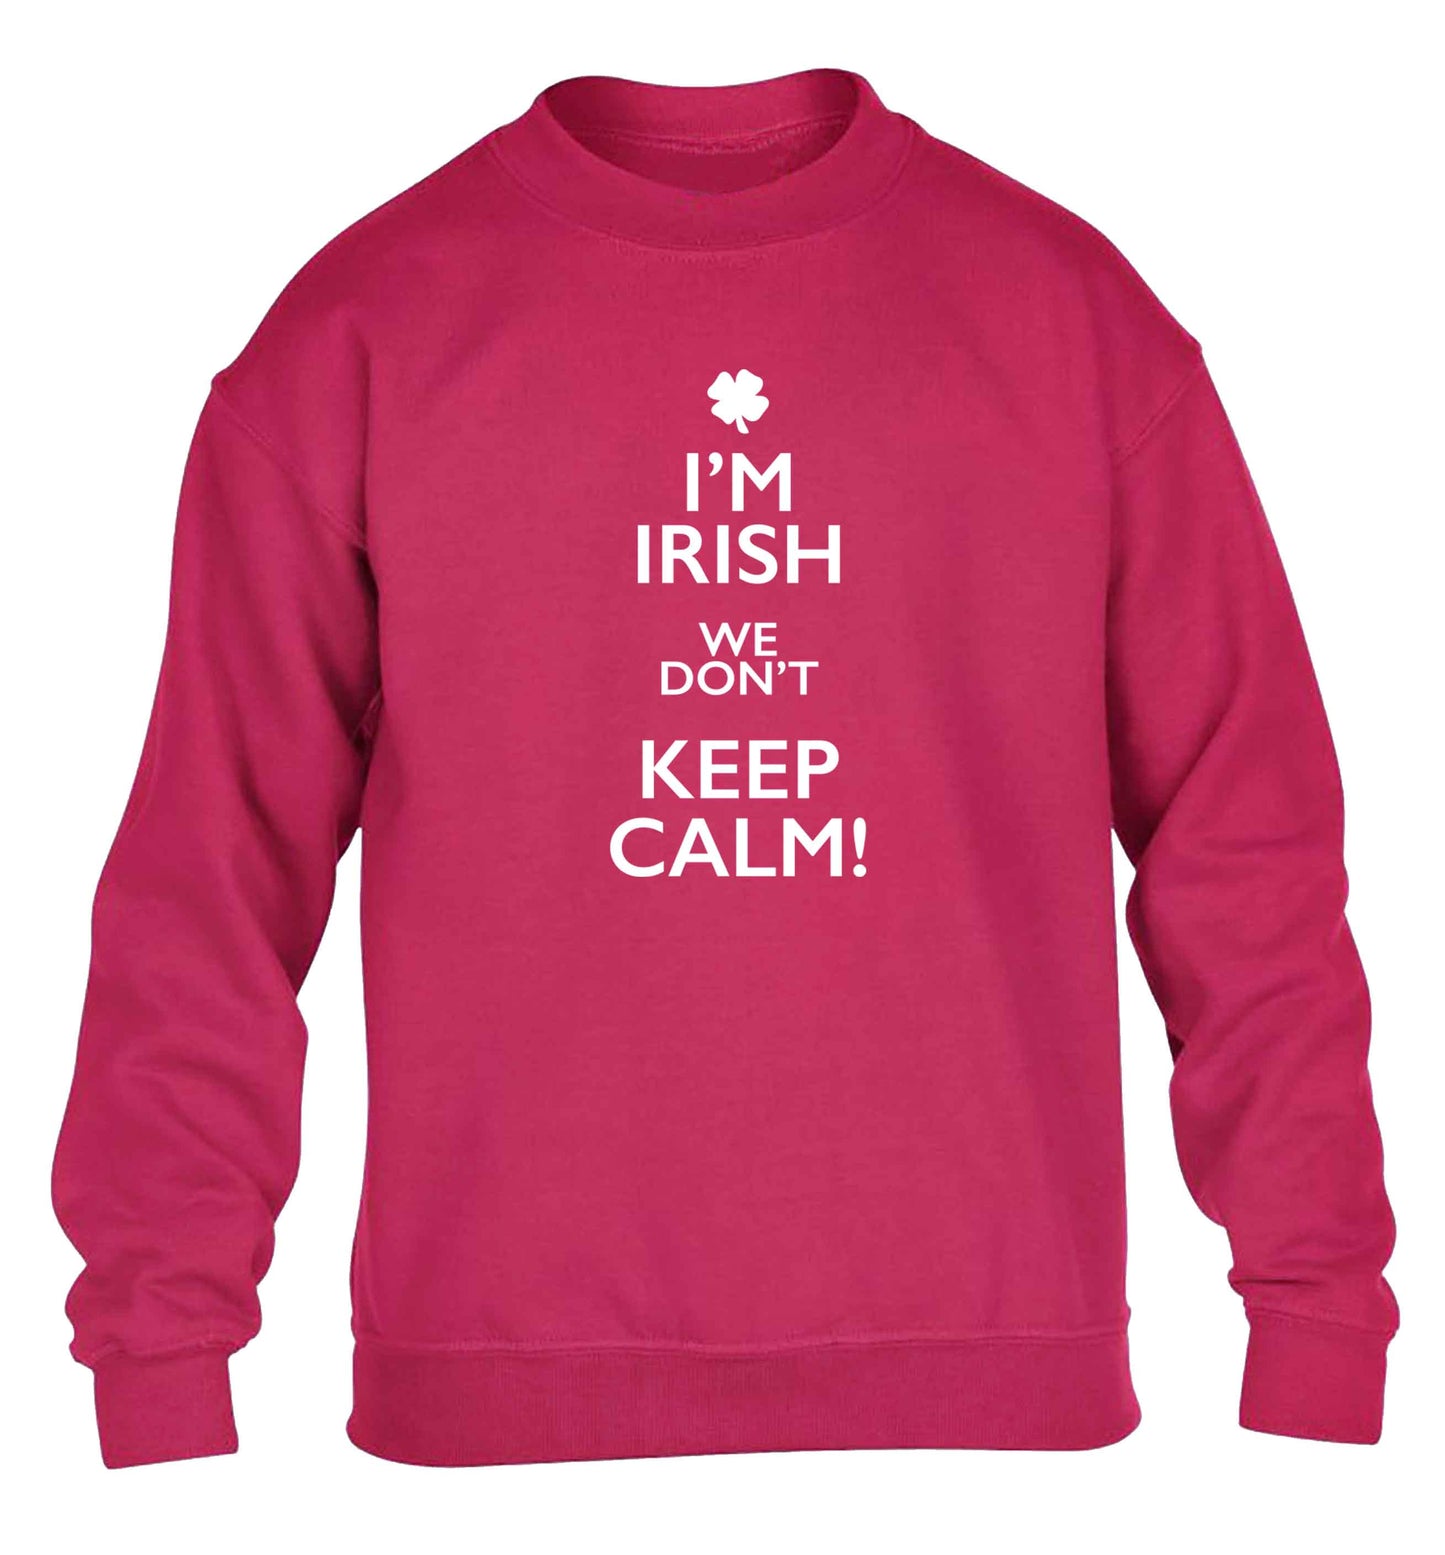 I'm Irish we don't keep calm children's pink sweater 12-13 Years